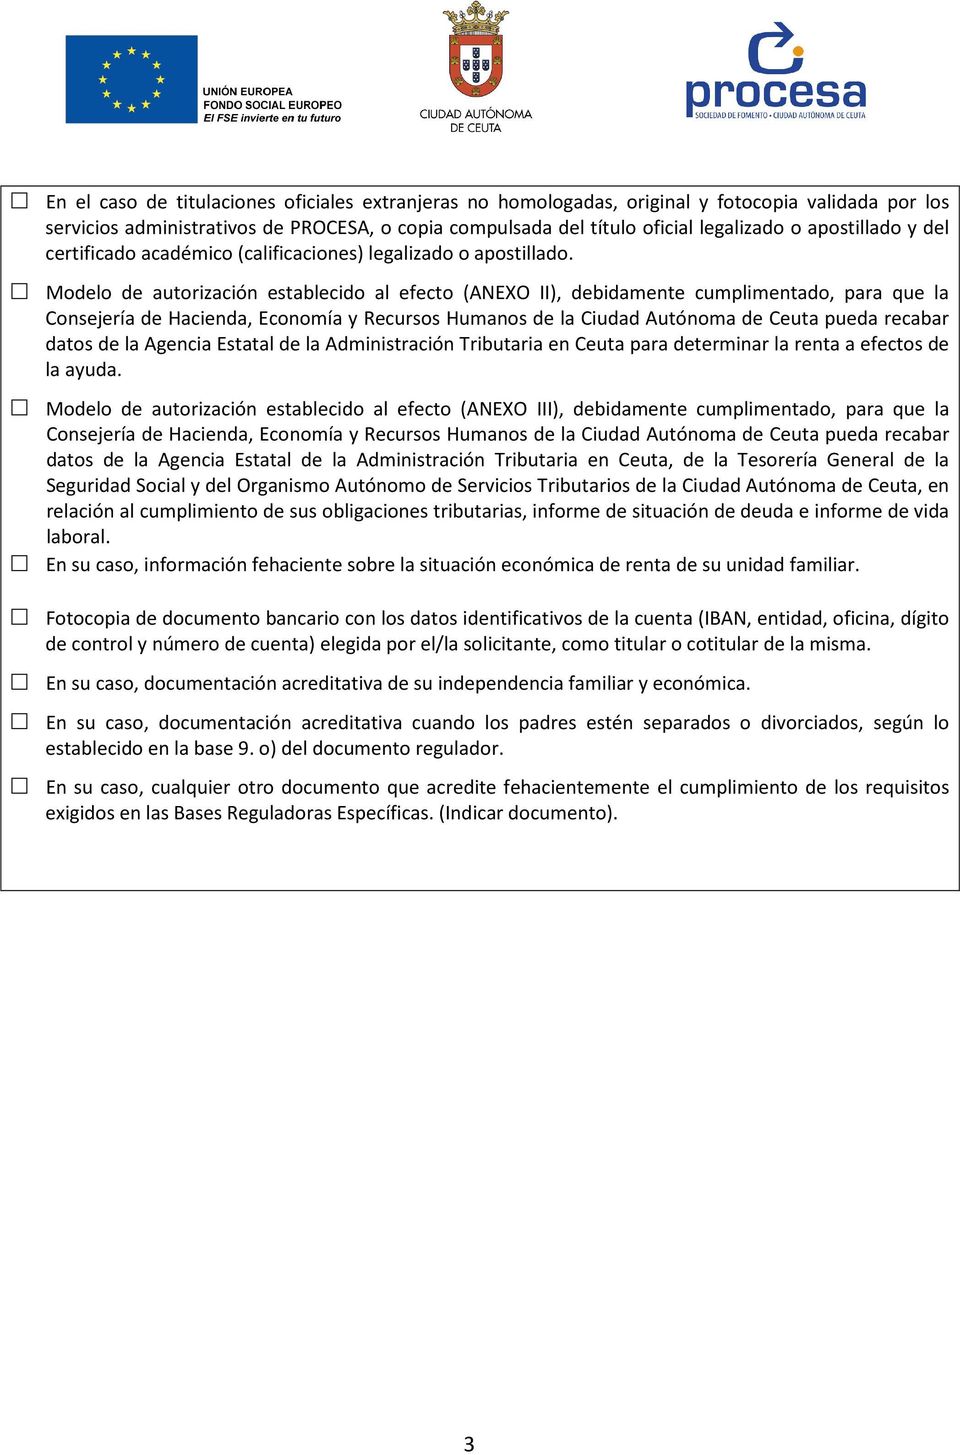 Modelo de autorización establecido al efecto (ANEXO II), debidamente cumplimentado, para que la Consejería de Hacienda, Economía y Recursos Humanos de la Ciudad Autónoma de Ceuta pueda recabar datos